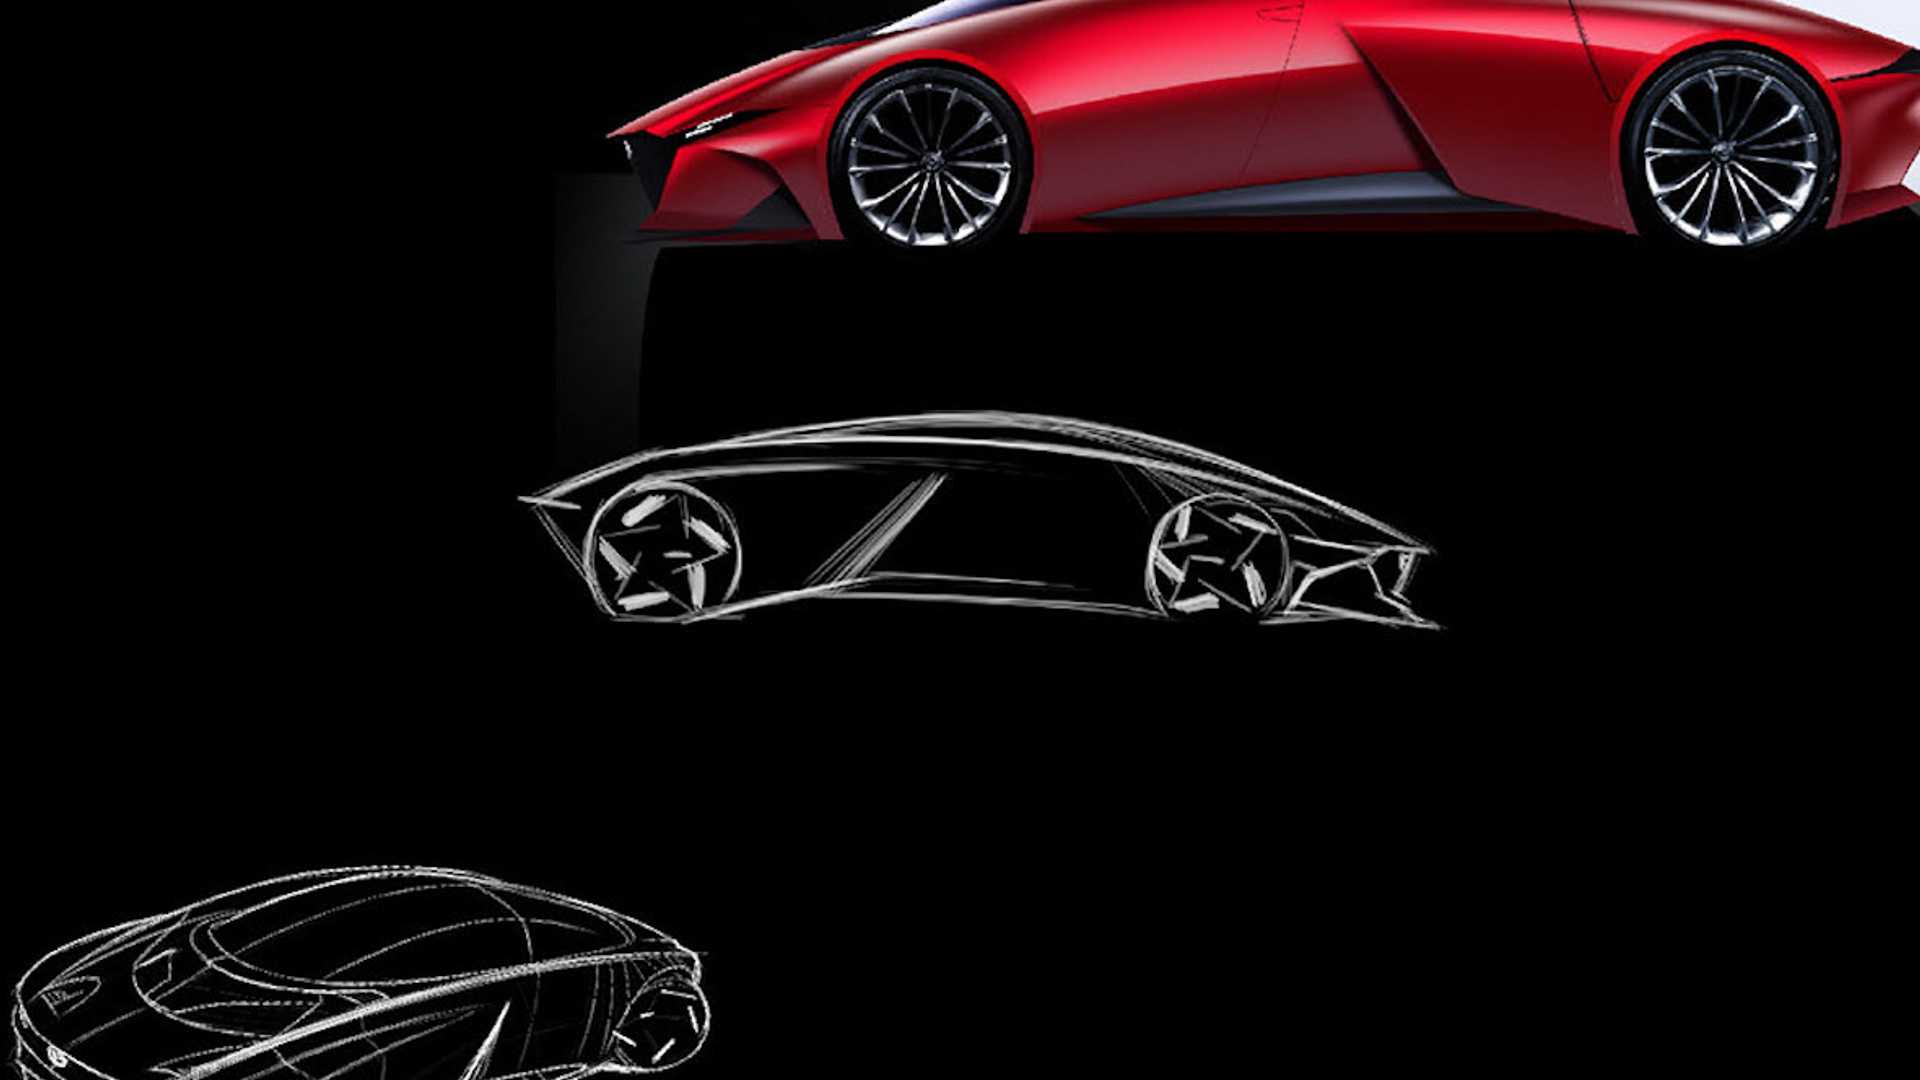 Tưởng Mazda làm siêu xe thì sẽ 'toang', ai ngờ lại đẹp xuất thần như thế này